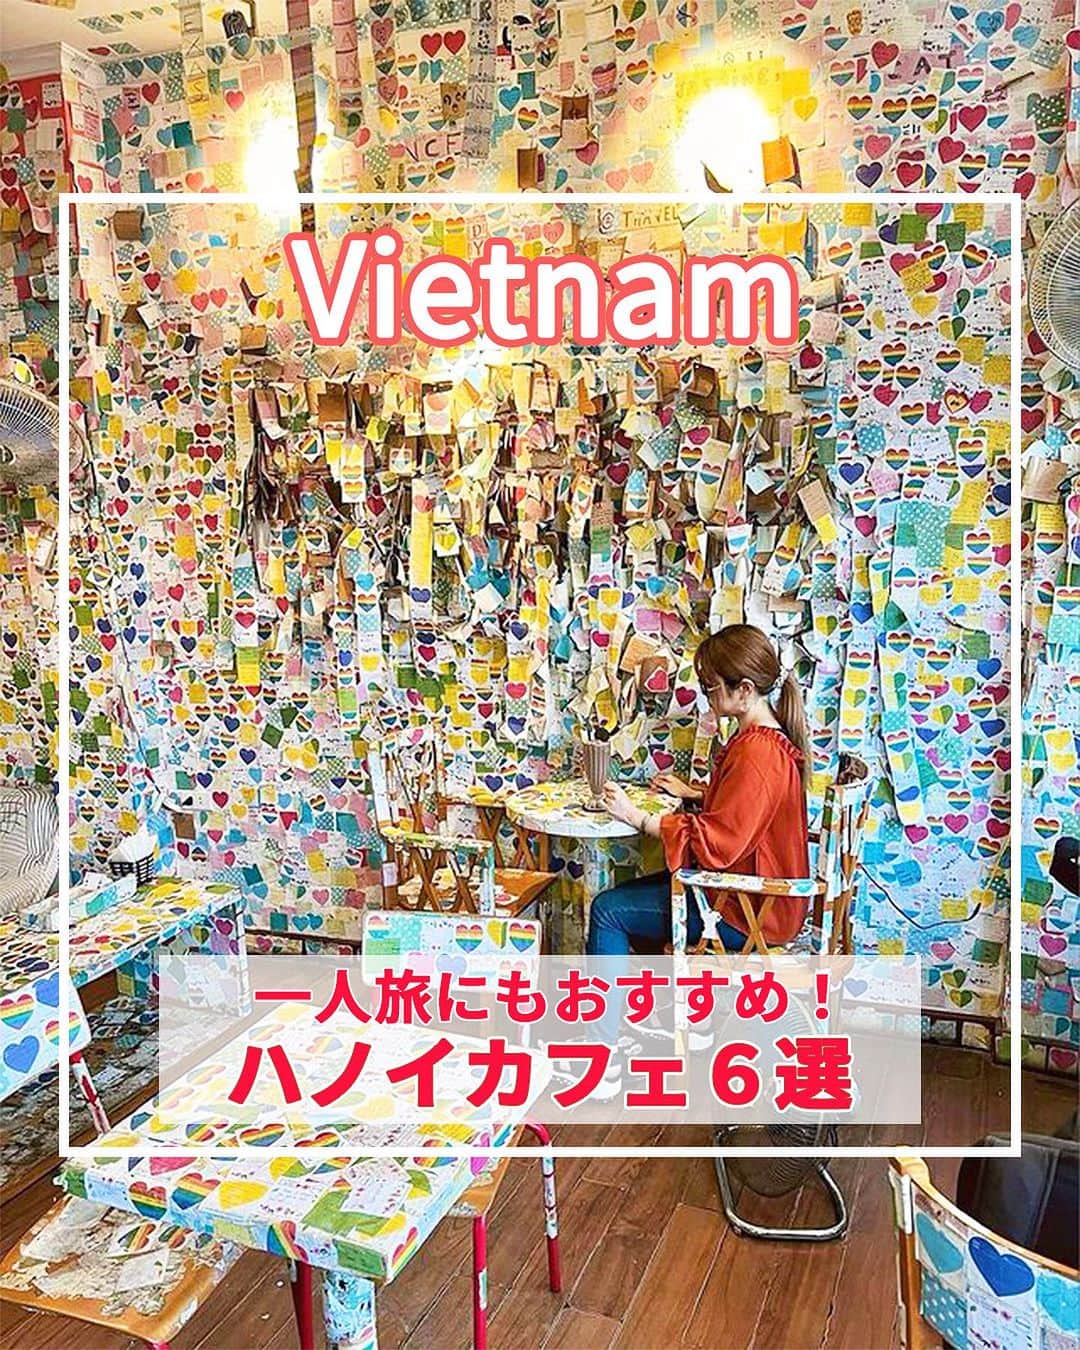 旅工房公式さんのインスタグラム写真 - (旅工房公式Instagram)「＼ベトナムのカフェ文化を楽しむ／  #ベトナム #ハノイ   こんにちは！☺  今回はアジアの旅行先から、人気のベトナム・ハノイからおしゃれなカフェを大特集しました！  『ハノイカフェ 一人旅』で検索すると、住所情報を含めたもっと詳しい旅pocket記事があります🎵 ぜひそちらもチェックしてみてください🥰  旅行先の参考にぜひしてみてください＼(^o^)／ 💚   ▽お写真ありがとうございます❣   📍HIDDEN GEM COFFEE  @gram0_0snoopy さん ベトナムの古民家を改装したエコフレンドリーなカフェ。 インテリアはすべてリユース材料が使われているそう。  店内のところどころにアート作品があり、フォトジェニックな雰囲気♪  【住所】 1 Hàng Mắm, Phố cổ Hà Nội, Hoàn Kiếm, Hà Nội, ベトナム  📍THE NOTE COFFEE @ayu_trip さん カラフルな付箋で埋め尽くされている、おもしろかわいいカフェ！  店内に貼られている付箋は、お店に来たお客さんも書けるので自分でメッセージを書いて好きな場所に貼ることもできますよ◎  【住所】 64 P. Lương Văn Can, Hàng Trống, Hoàn Kiếm, Hà Nội, ベトナム  📍LAIKA CAFÉ  @masako_vietnam さん ハノイの旧市街にある、人気のカフェチェーン店。  窓際やテラス席では旧市街の街並みを見渡しながらのカフェタイムを満喫できます◎  【住所】 1 P. Đinh Tiên Hoàng, Hàng Trống, Hoàn Kiếm, Hà Nội, ベトナム  📍Café Pho Co  @h_k_hanoi さん 100年以上前のベトナムの伝統的な民家を利用したレトロな雰囲気が魅力のスポット！  涼しい時期であれば、自然の風を感じながらホアンキエム湖を見渡せるテラス席がおすすめ♪  【住所】 11 P. Hàng Gai, Hàng Trống, Hoàn Kiếm, Hà Nội 10000 ベトナム  📍Cau Go Vietnamese Cuisine @minako.hanoi さん 絶景を眺めながらカフェタイムをすごしたいならここ！  広い窓からはホアンキエム湖が一望できます◎  ベトナムの定番スイーツ蓮の実とロンガンのチェーがおすすめメニューです！  【住所】 7 P. Đinh Tiên Hoàng, Hàng Trống, Hoàn Kiếm, Hà Nội, ベトナム  📍NOLA cafe @atsushi_days さん 民家の建物をそのまま使ったお家のようなカフェ。  中庭の吹き抜けをぐるっと囲むように部屋があり、部屋ごとにインテリアが違うので自分の好きな場所を探してみてください♪  【住所】 in the alley, 89 P. Mã Mây, Hàng Buồm, Hoàn Kiếm, Hà Nội 100000 ベトナム  この記事を読んで、ぜひ次回の海外旅行の参考にしてみて下さい＼(^o^)／💛   �   #旅工房 #ベトナム女子旅 #ベトナム旅行 #ハノイ旅行 #HIDDENGEMCOFFEE #ベトナムカフェ巡り #カフェ巡り #THENOTECOFFEE #LAIKACAFÉ #CaféPhoCo #CauGoVietnamese Cuisine #NOLAcafe #ベトナムグルメ #ハノイグルメ #ベトナムカフェ #ハノイカフェ #ベトナムスイーツ #海外旅行好きと繋がりたい #海外旅行 #旅行好きな人と繋がりたい #海外旅行準備 #旅好き女子 #海外旅行行きたい #海外旅行計画 #旅スタグラム #海外一人旅 #旅の記録」7月5日 12時32分 - tabikobo